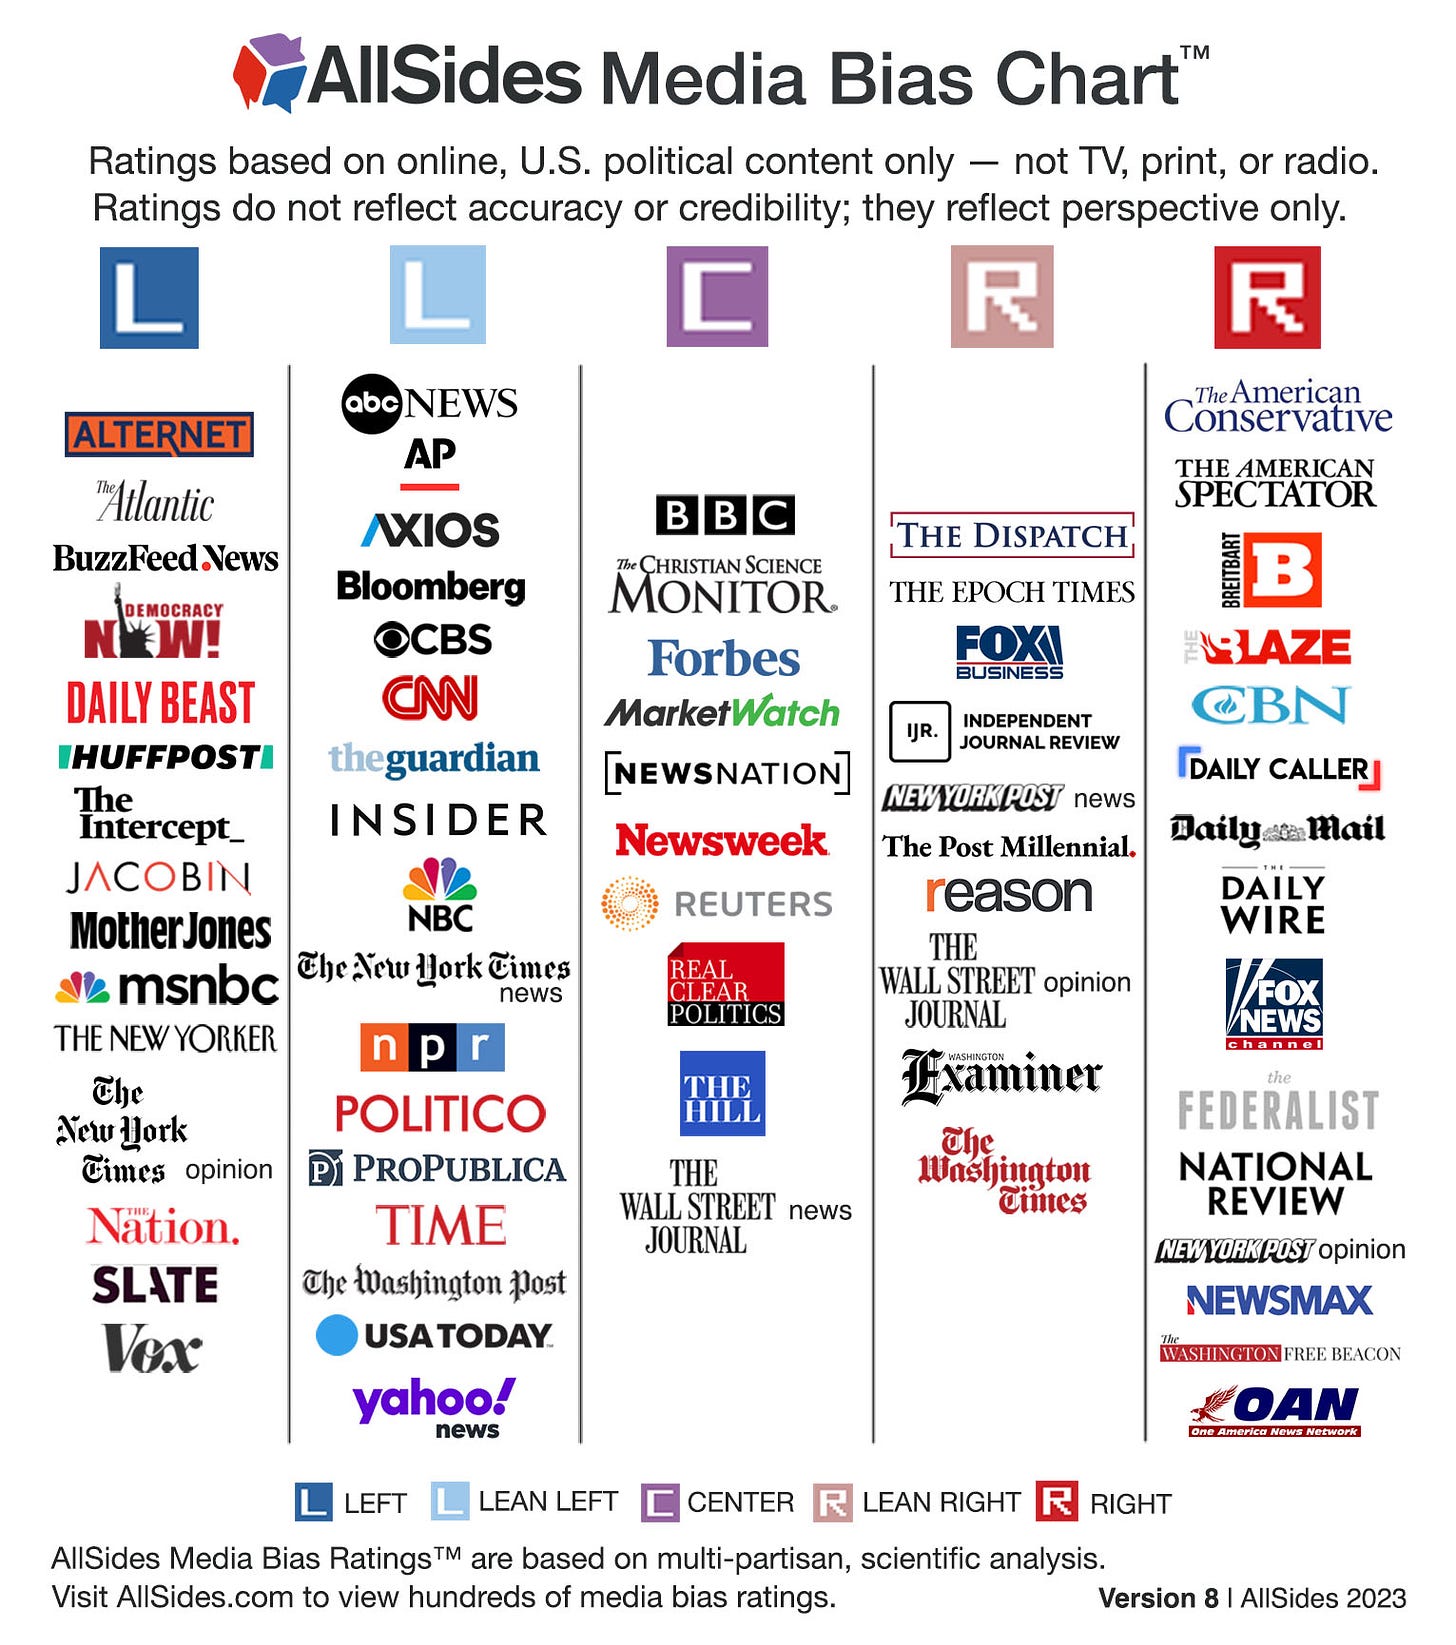 AllSides Media Bias Chart Version 8, 2023